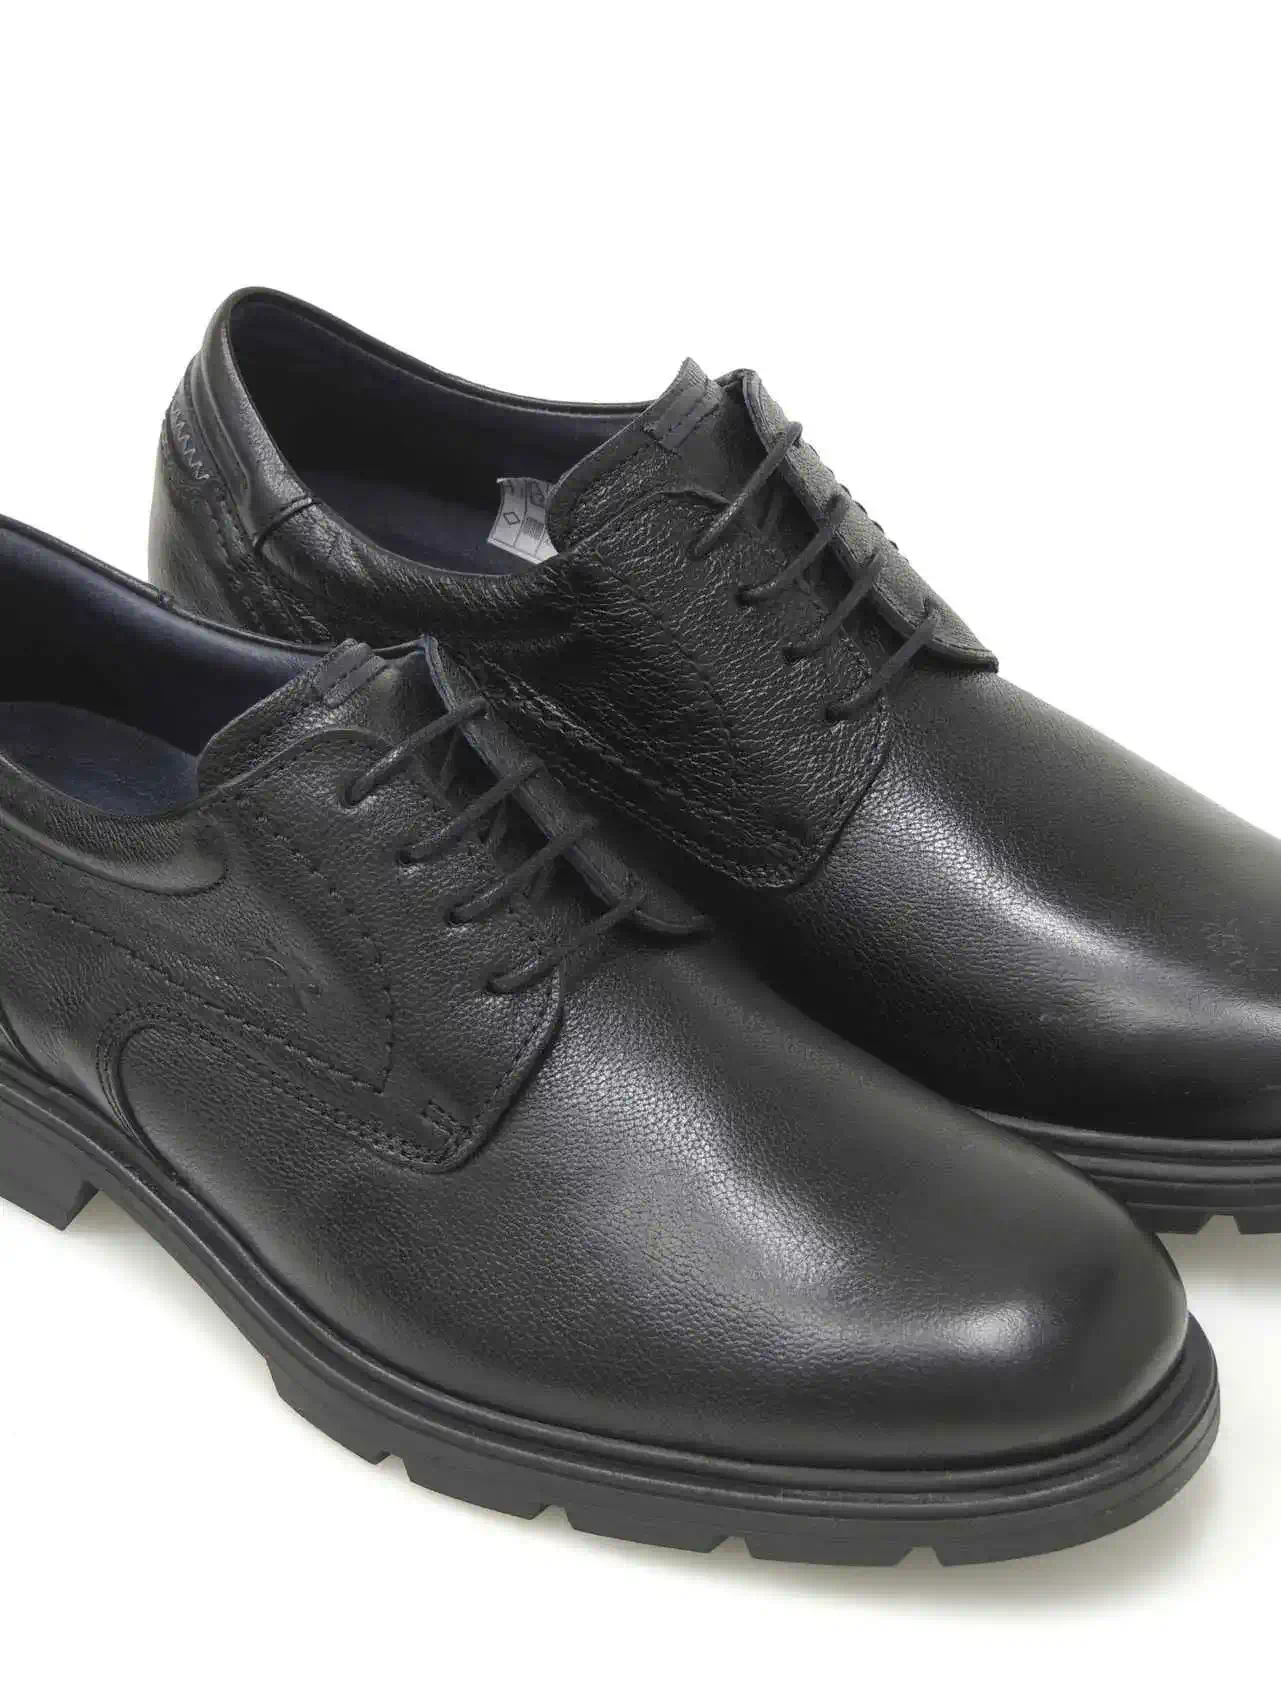 zapatos-blucher-fluchos-f1604-piel-negro